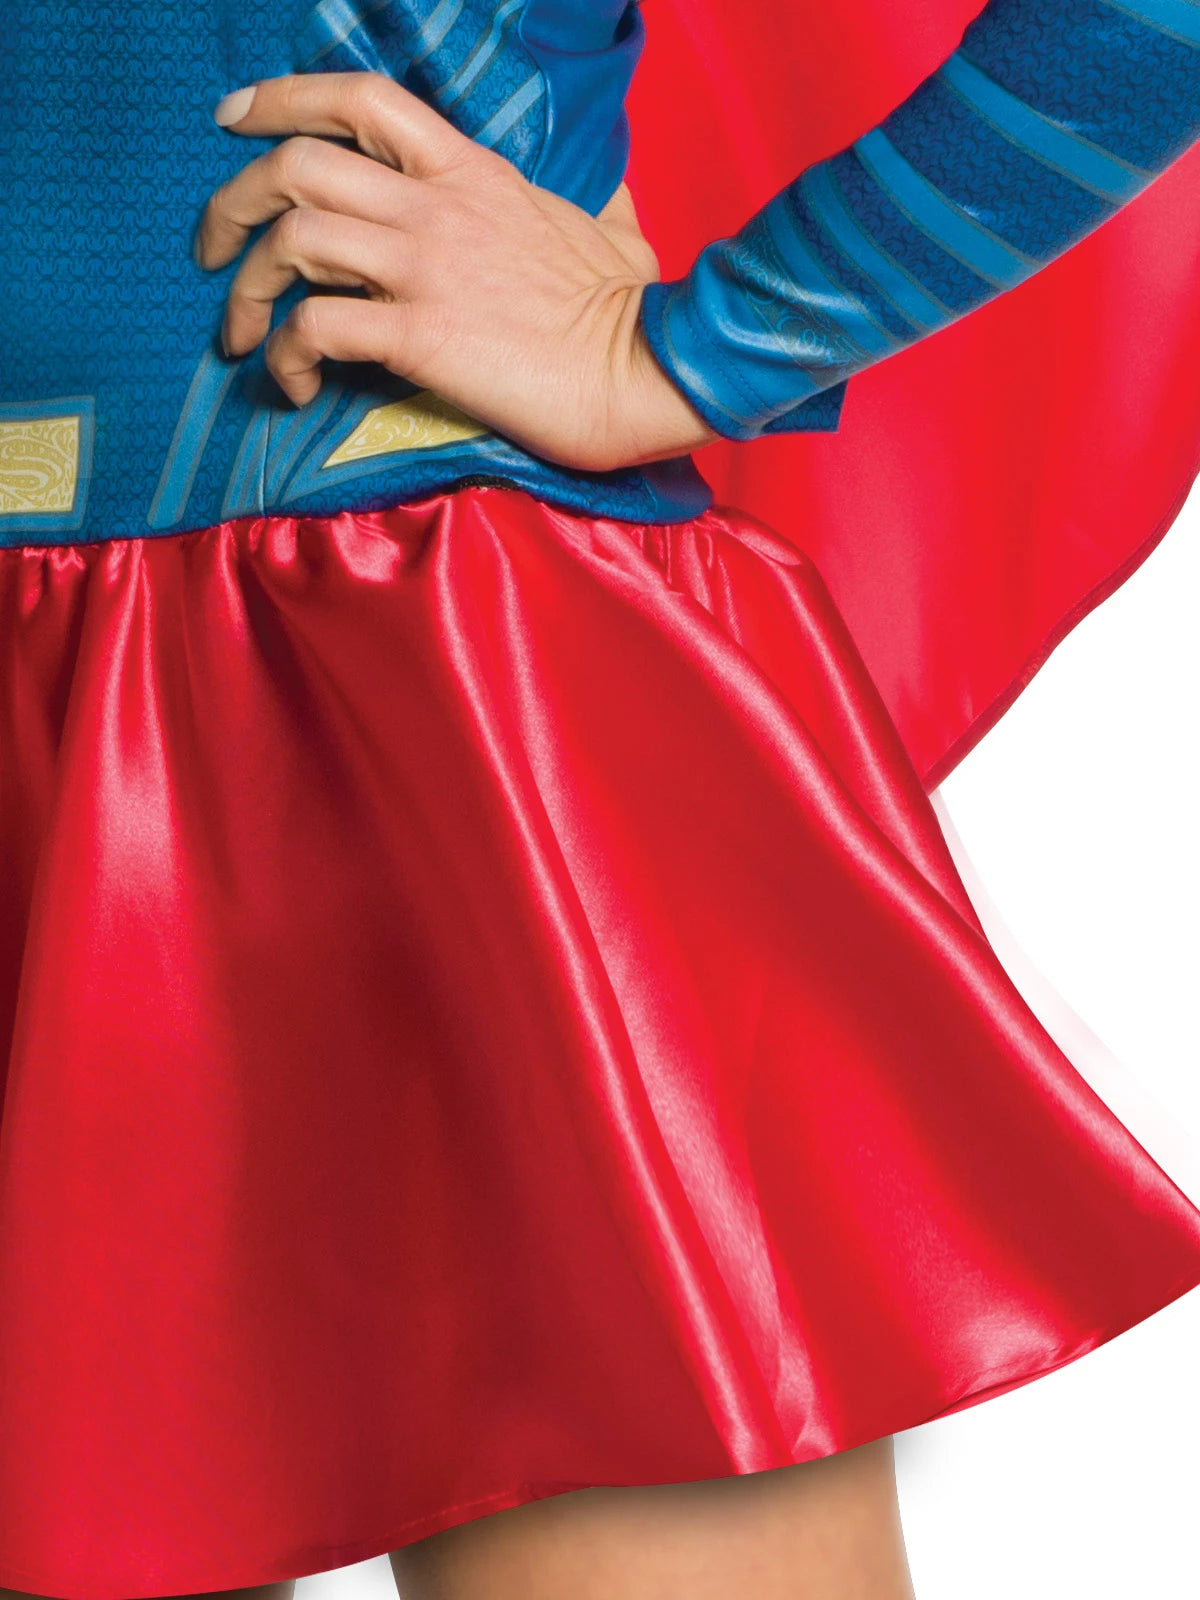 Supergirl Womens Costume